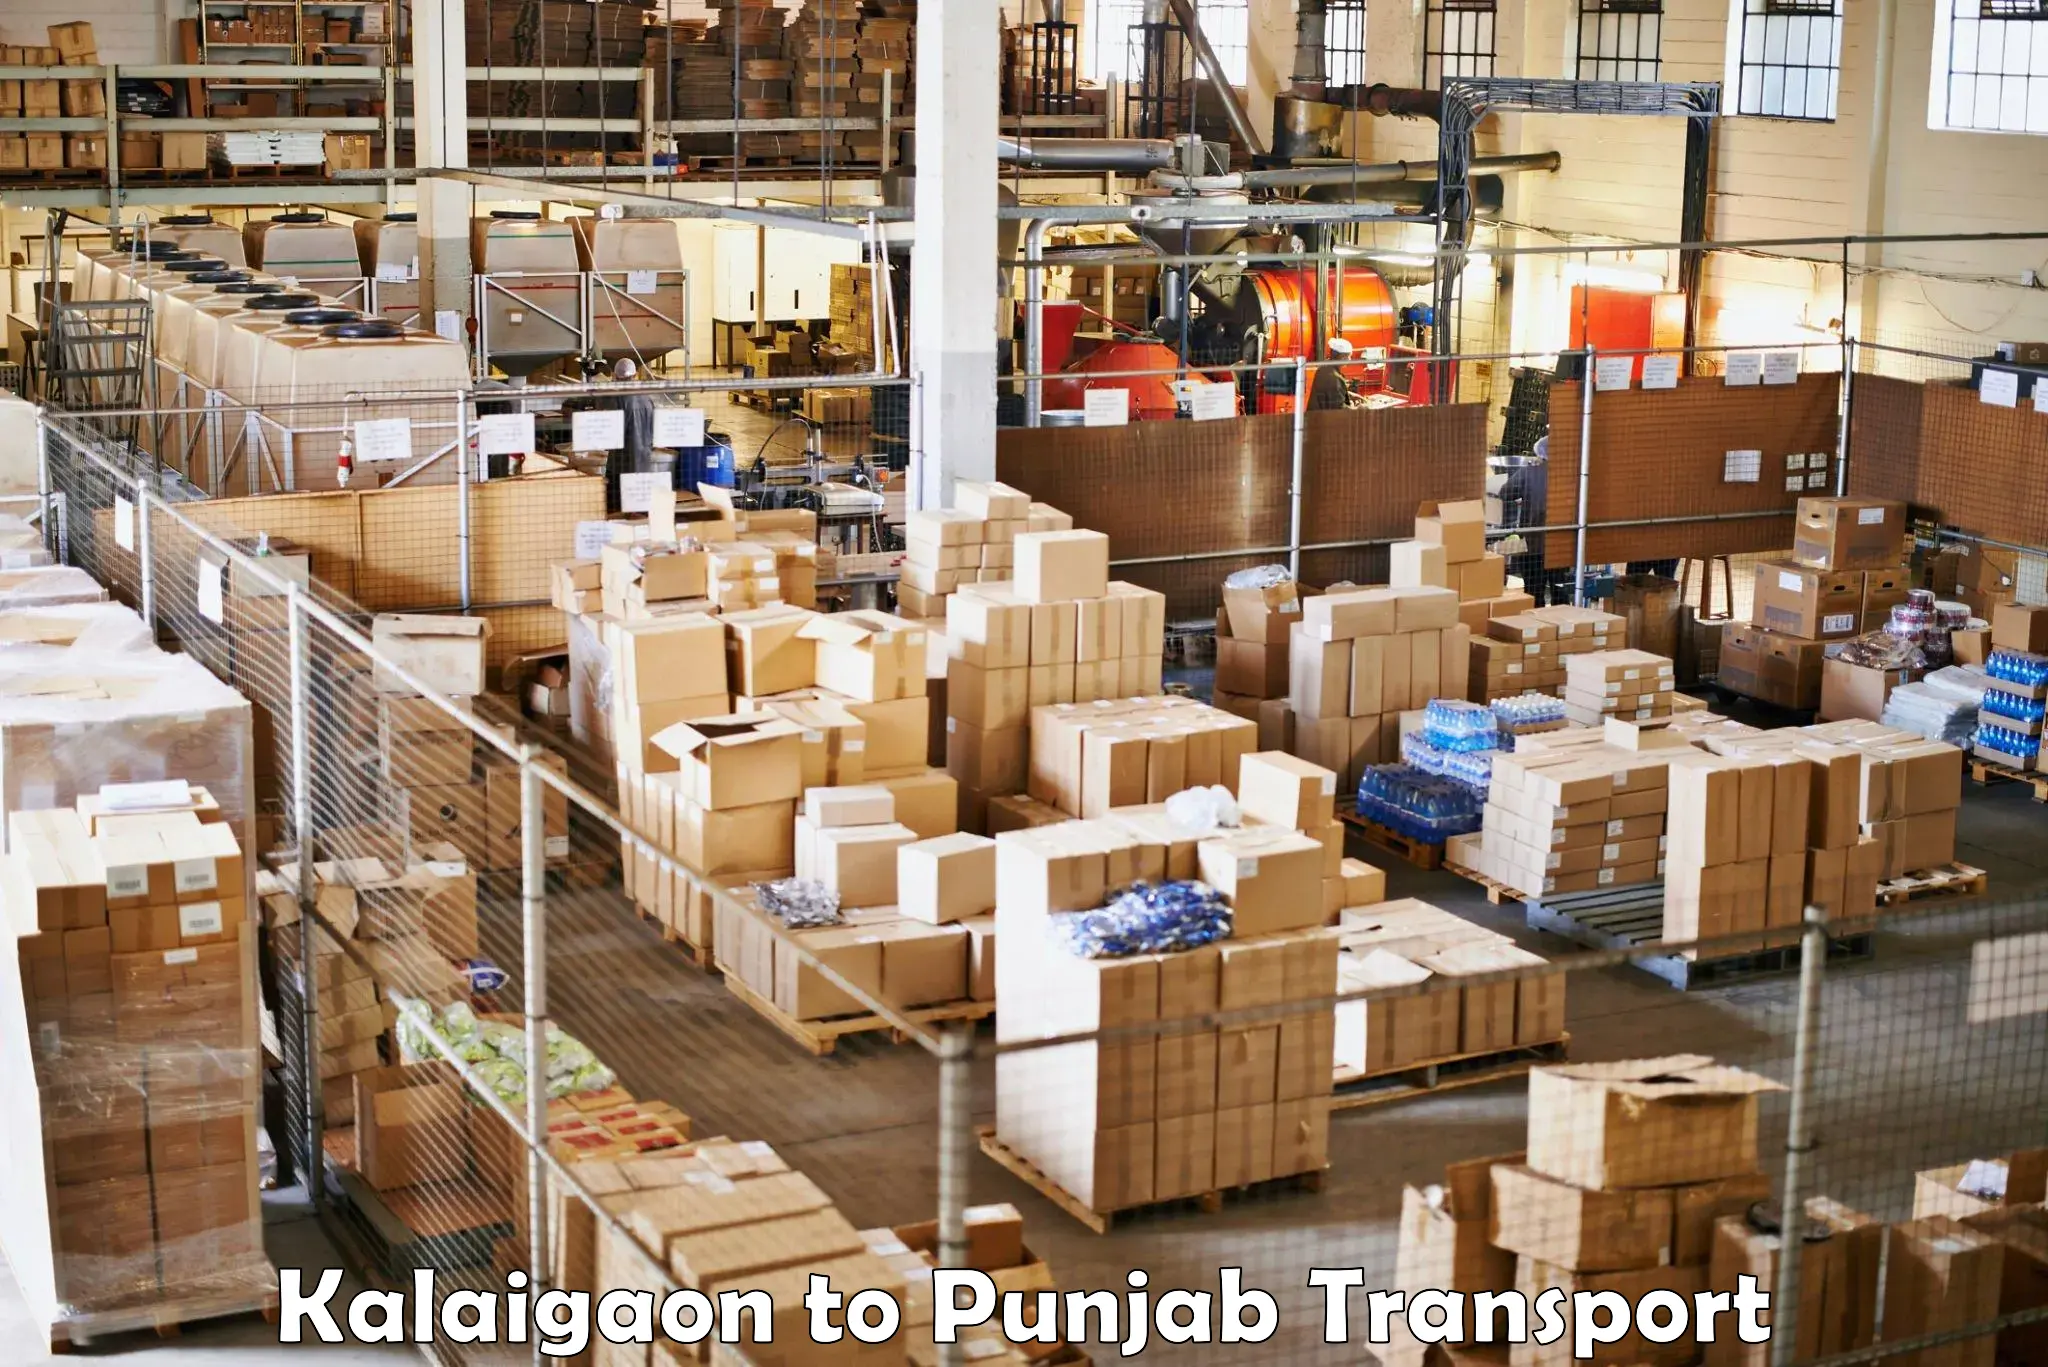 Daily parcel service transport Kalaigaon to Dinanagar